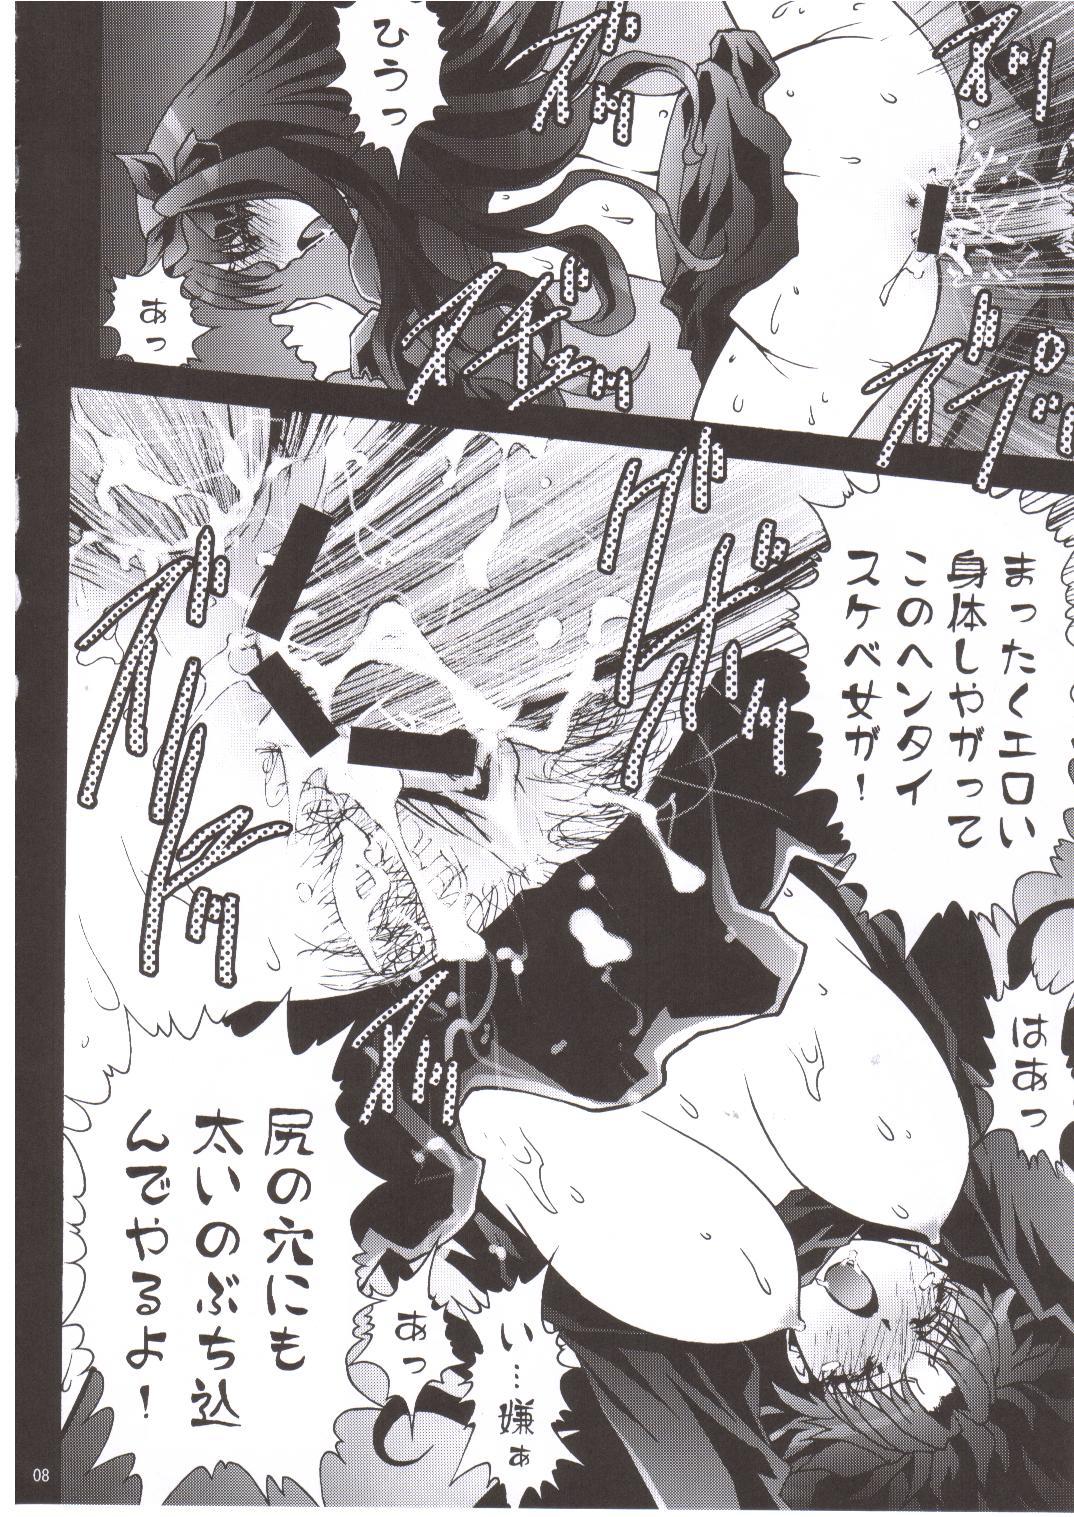 Punished Tenbatsu - Fate stay night Masseur - Page 8